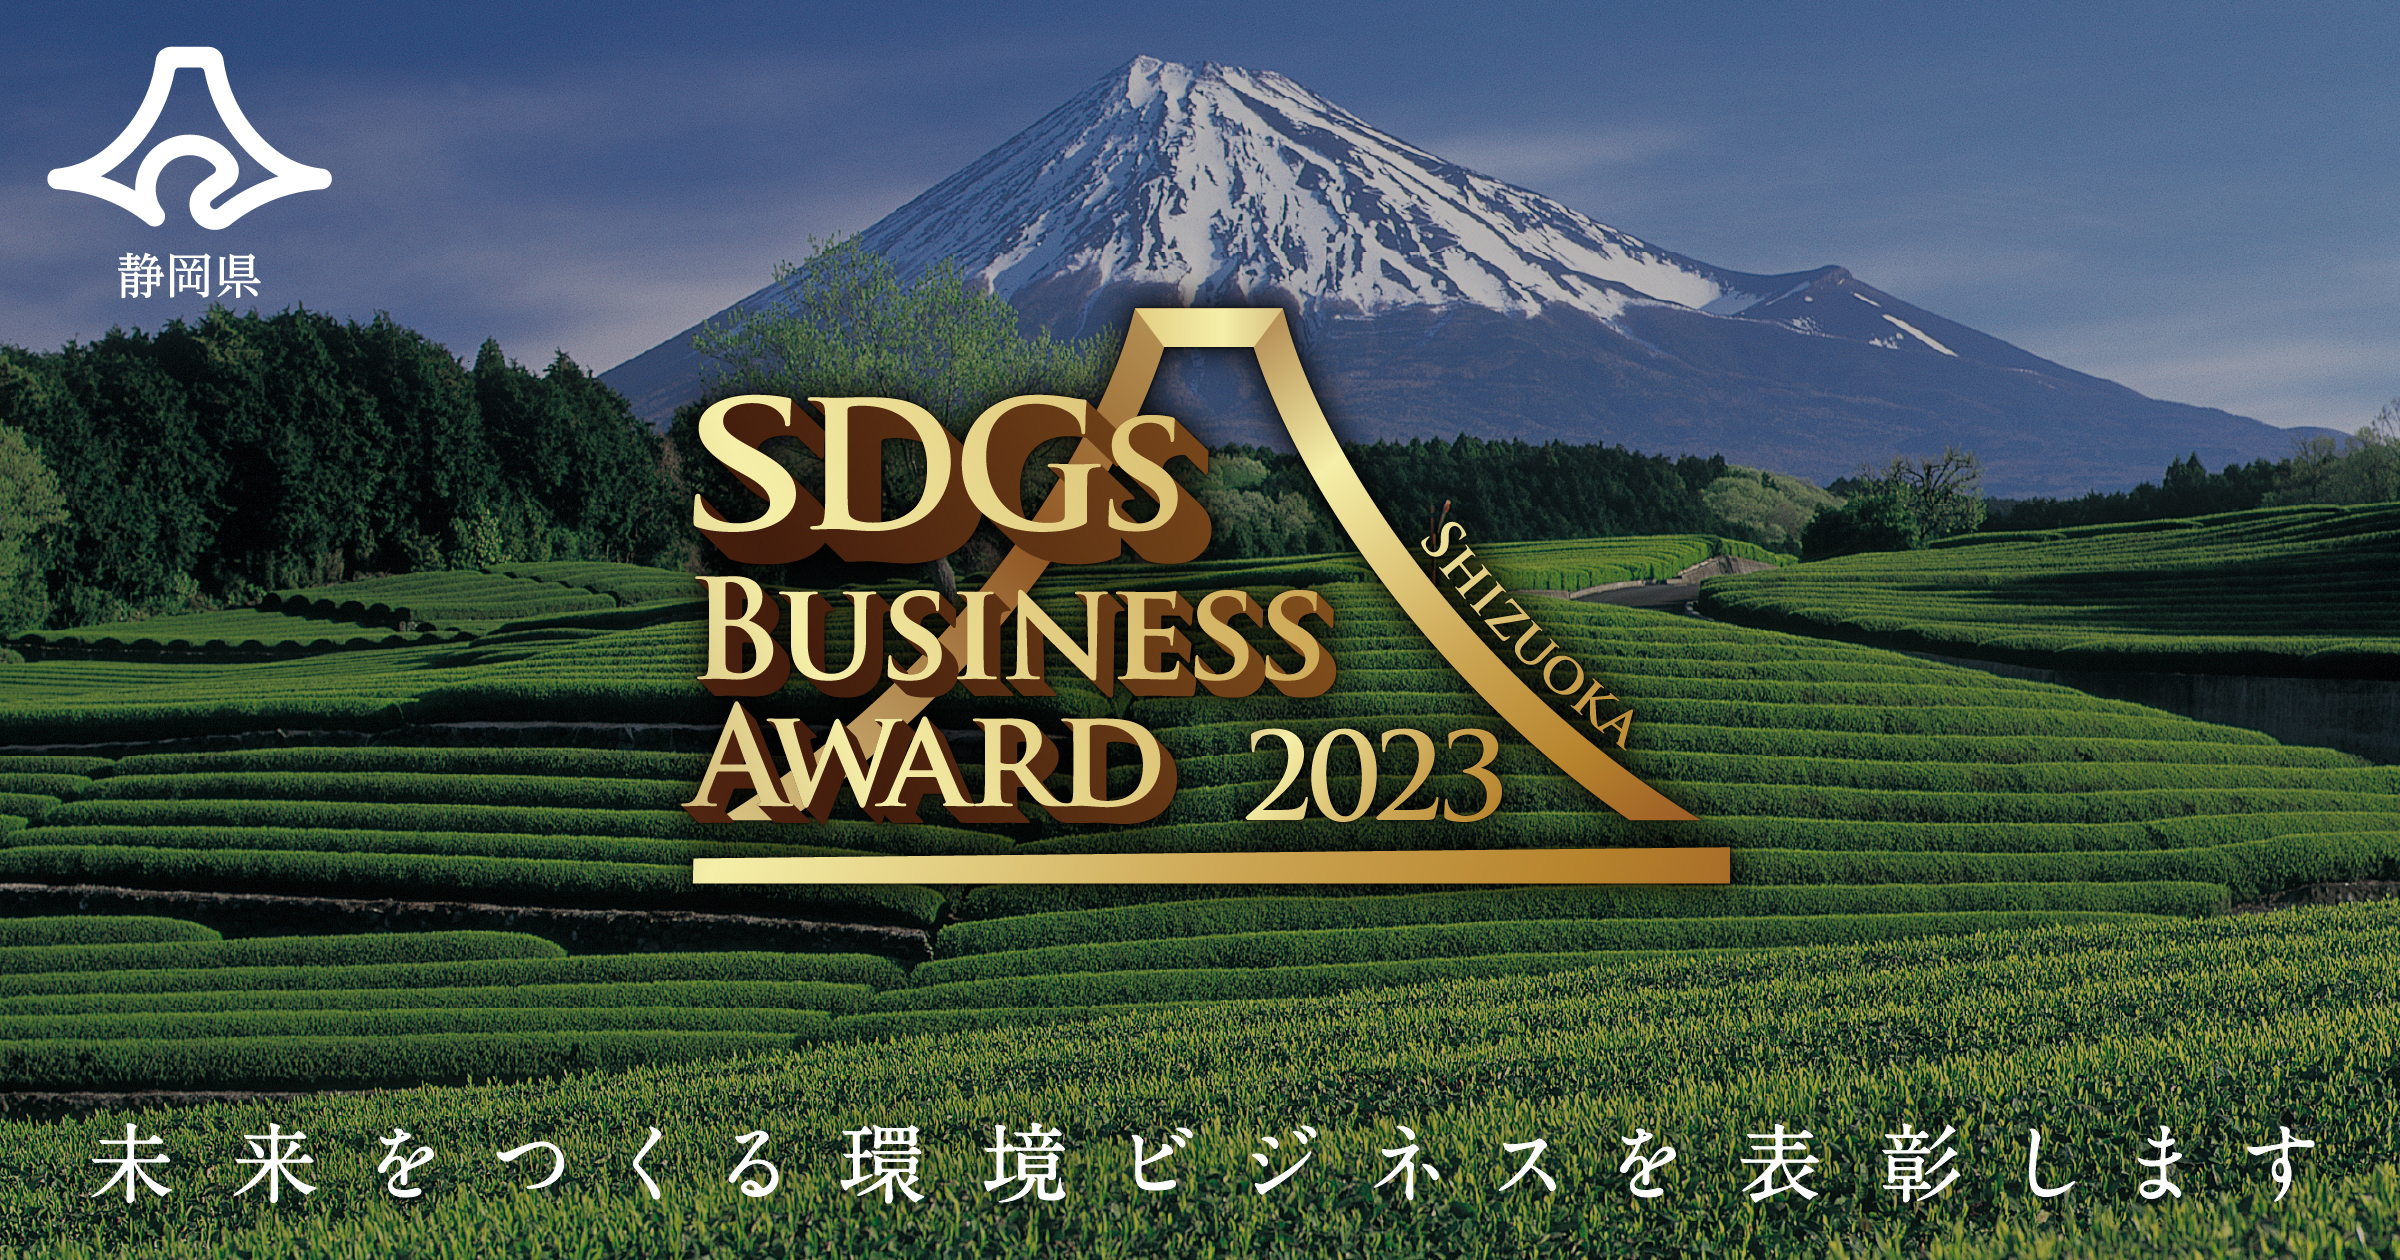 【事業アイデア募集】静岡県SDGsビジネスアワード2023 〜未来をつくる環境ビジネスを表彰します〜